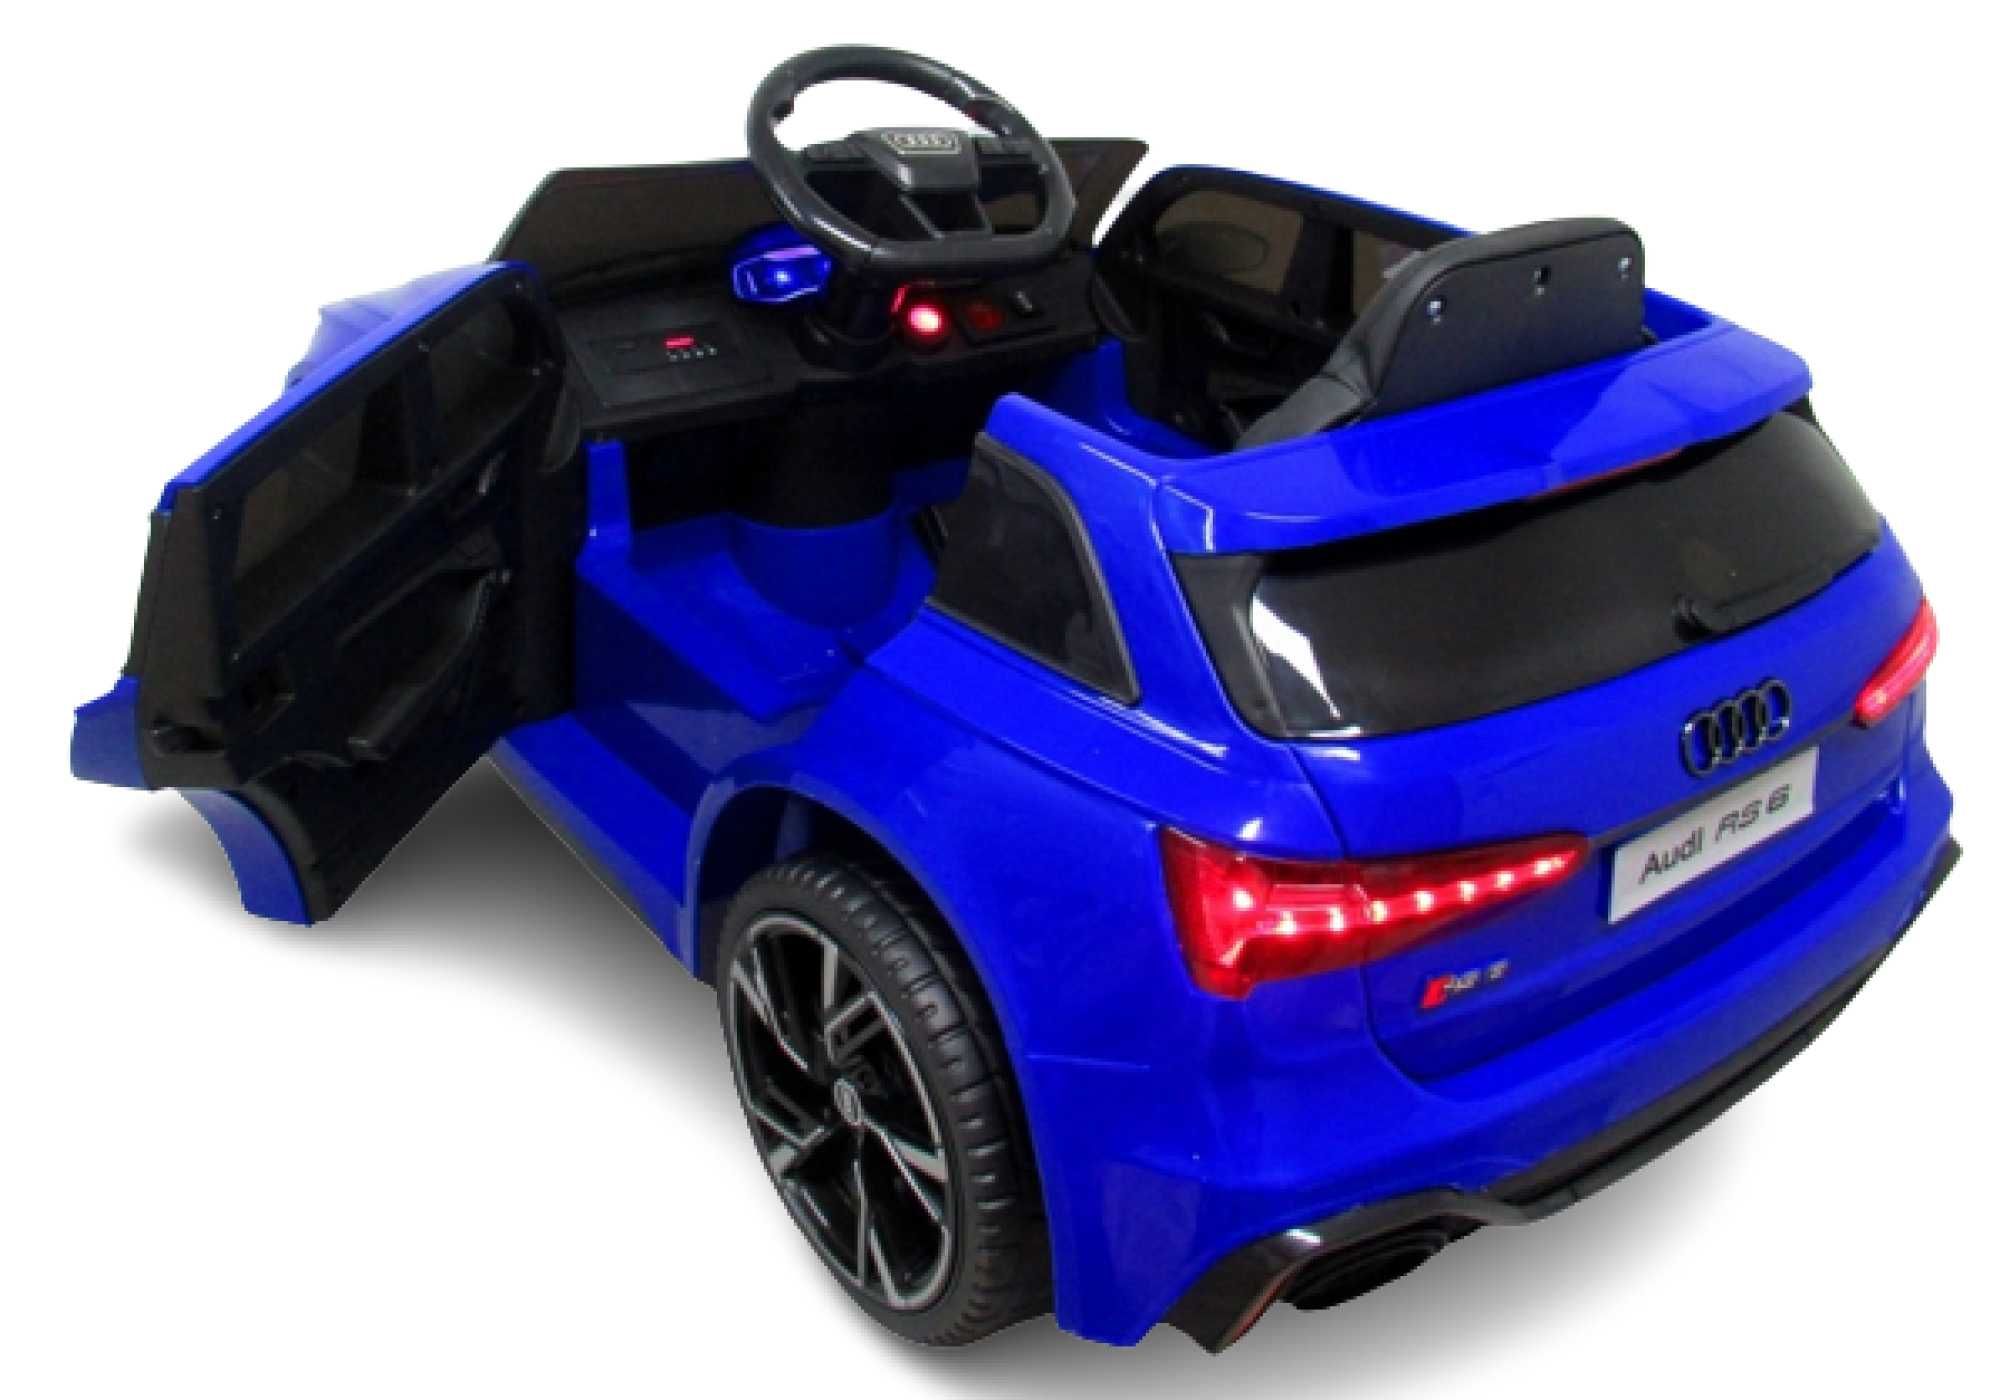 Masinuta electrica copii 1-4 ani Audi RS6, Roti Moi, Scaun Piele #Blue